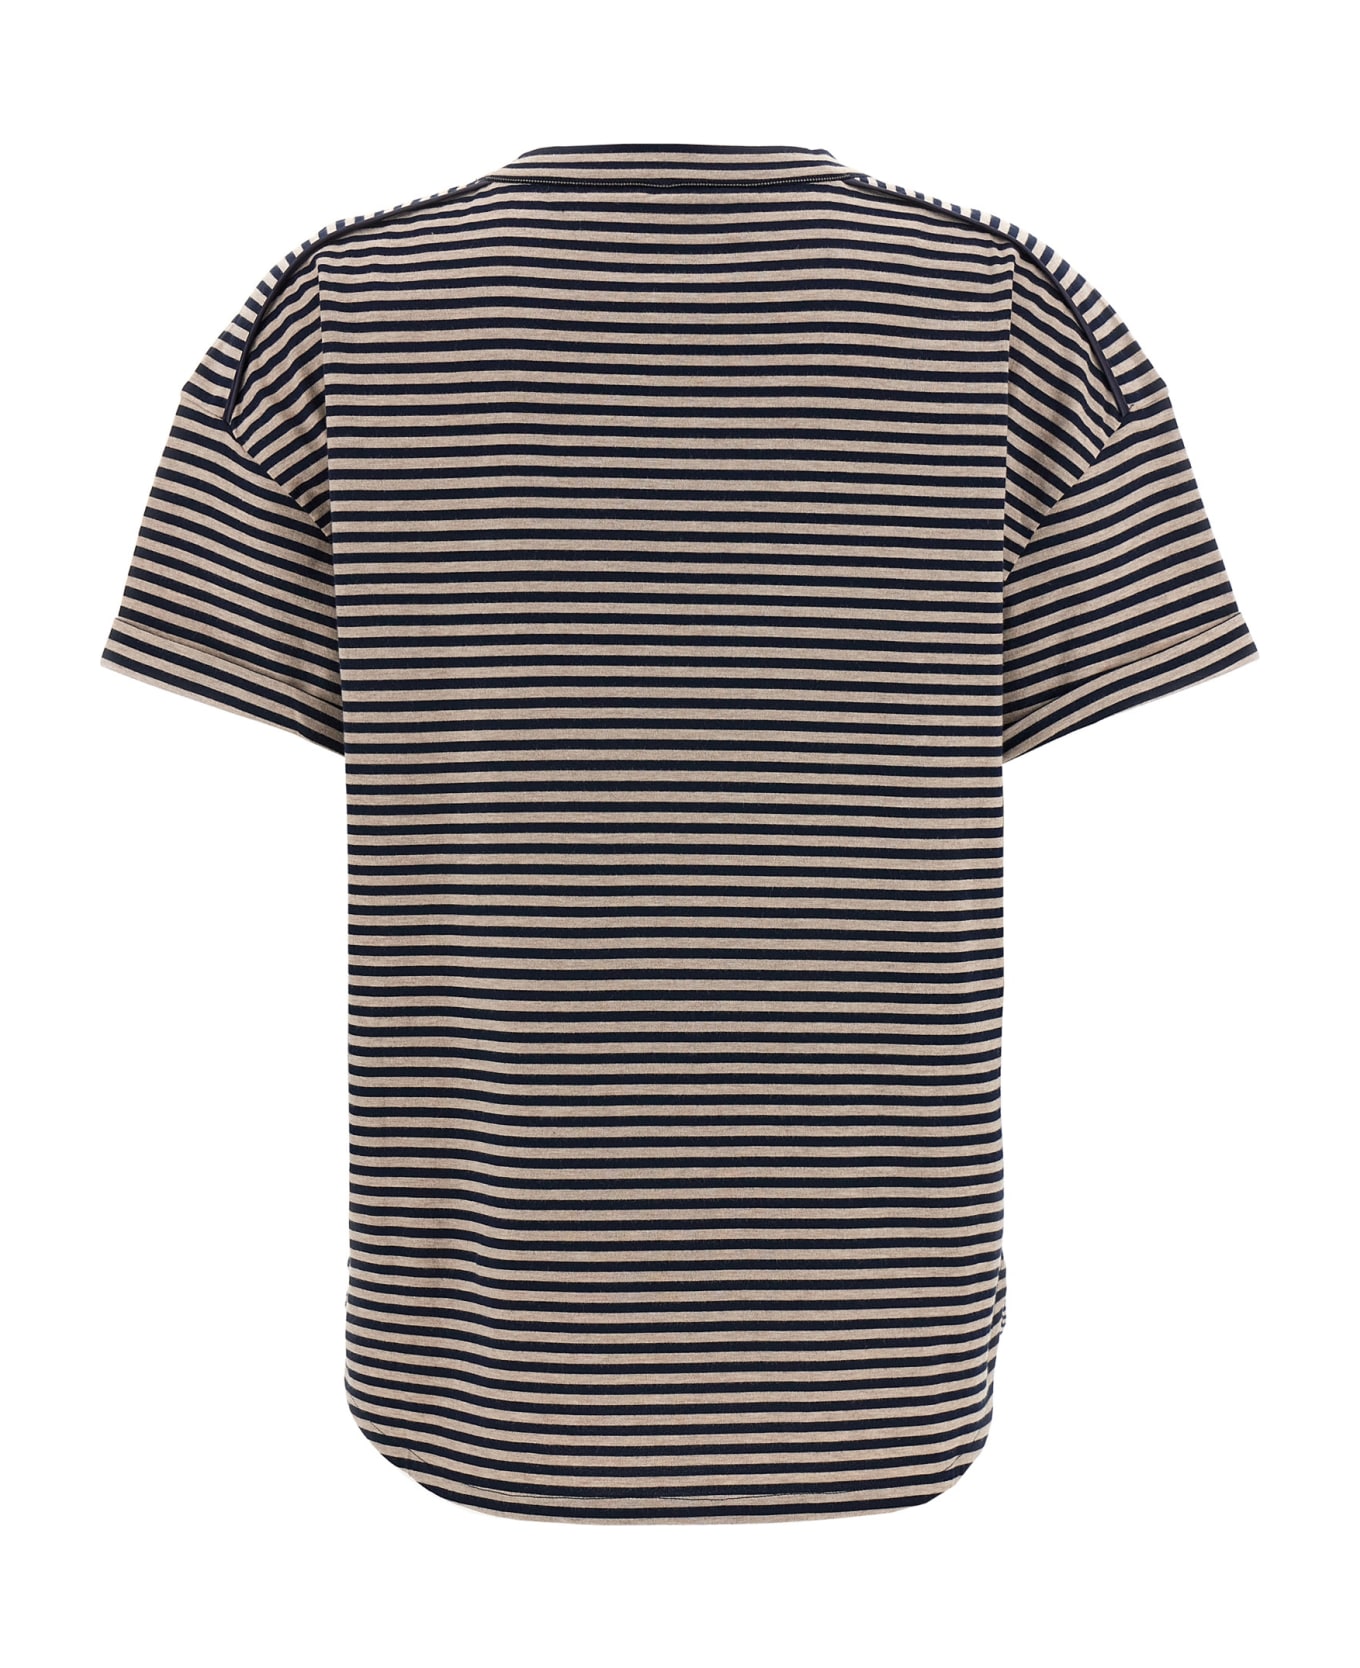 Brunello Cucinelli Striped T-shirt - White/Black